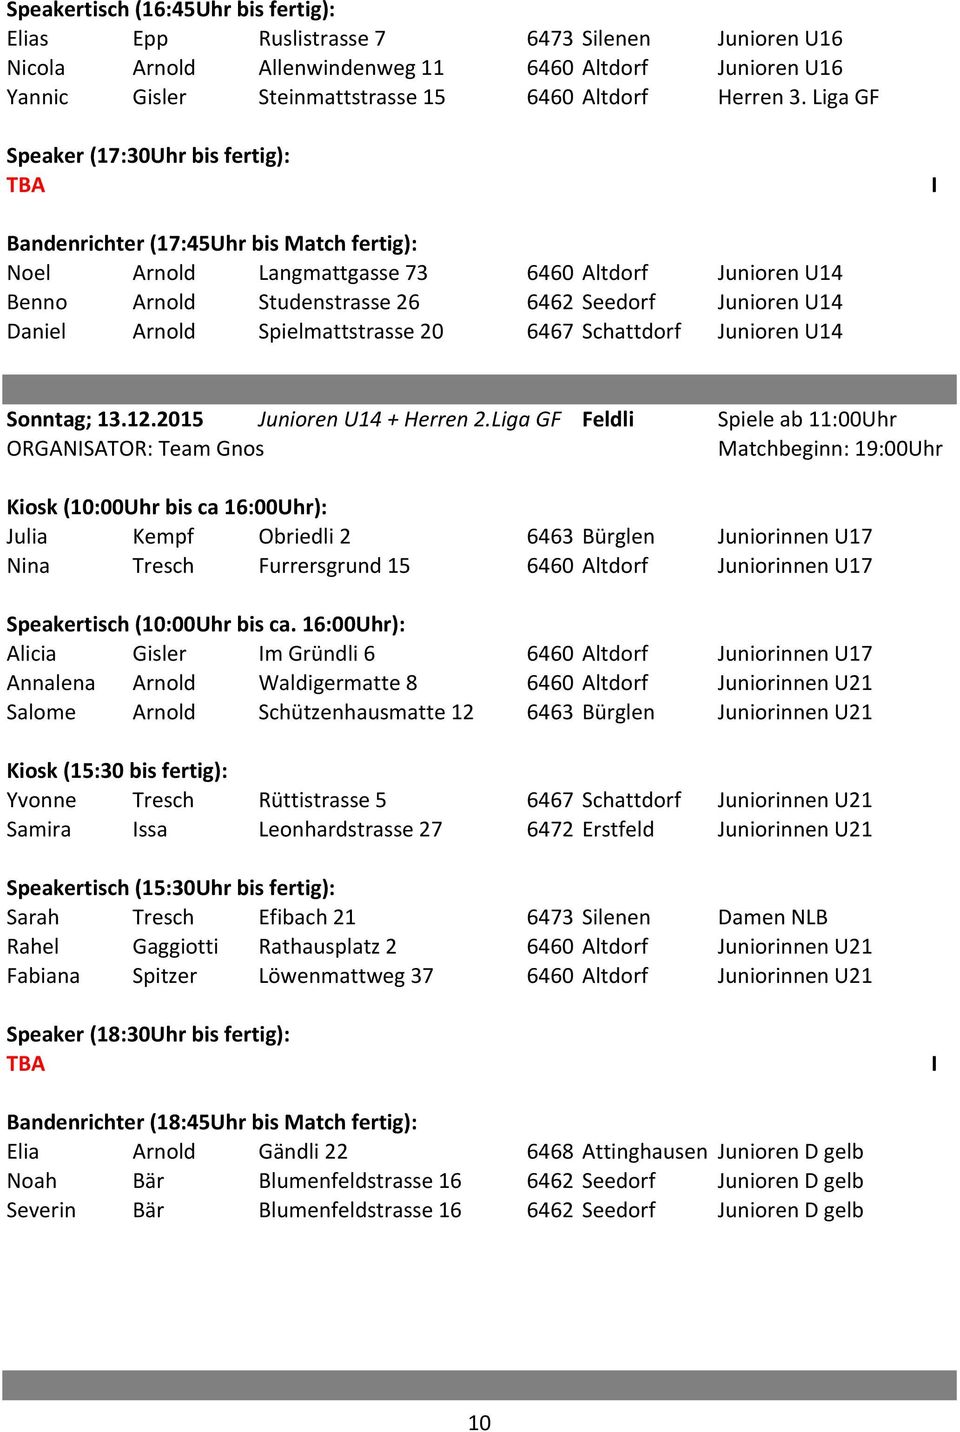 U14 Daniel Arnold Spielmattstrasse 20 6467 Schattdorf Junioren U14 Sonntag; 13.12.2015 Junioren U14 + Herren 2.